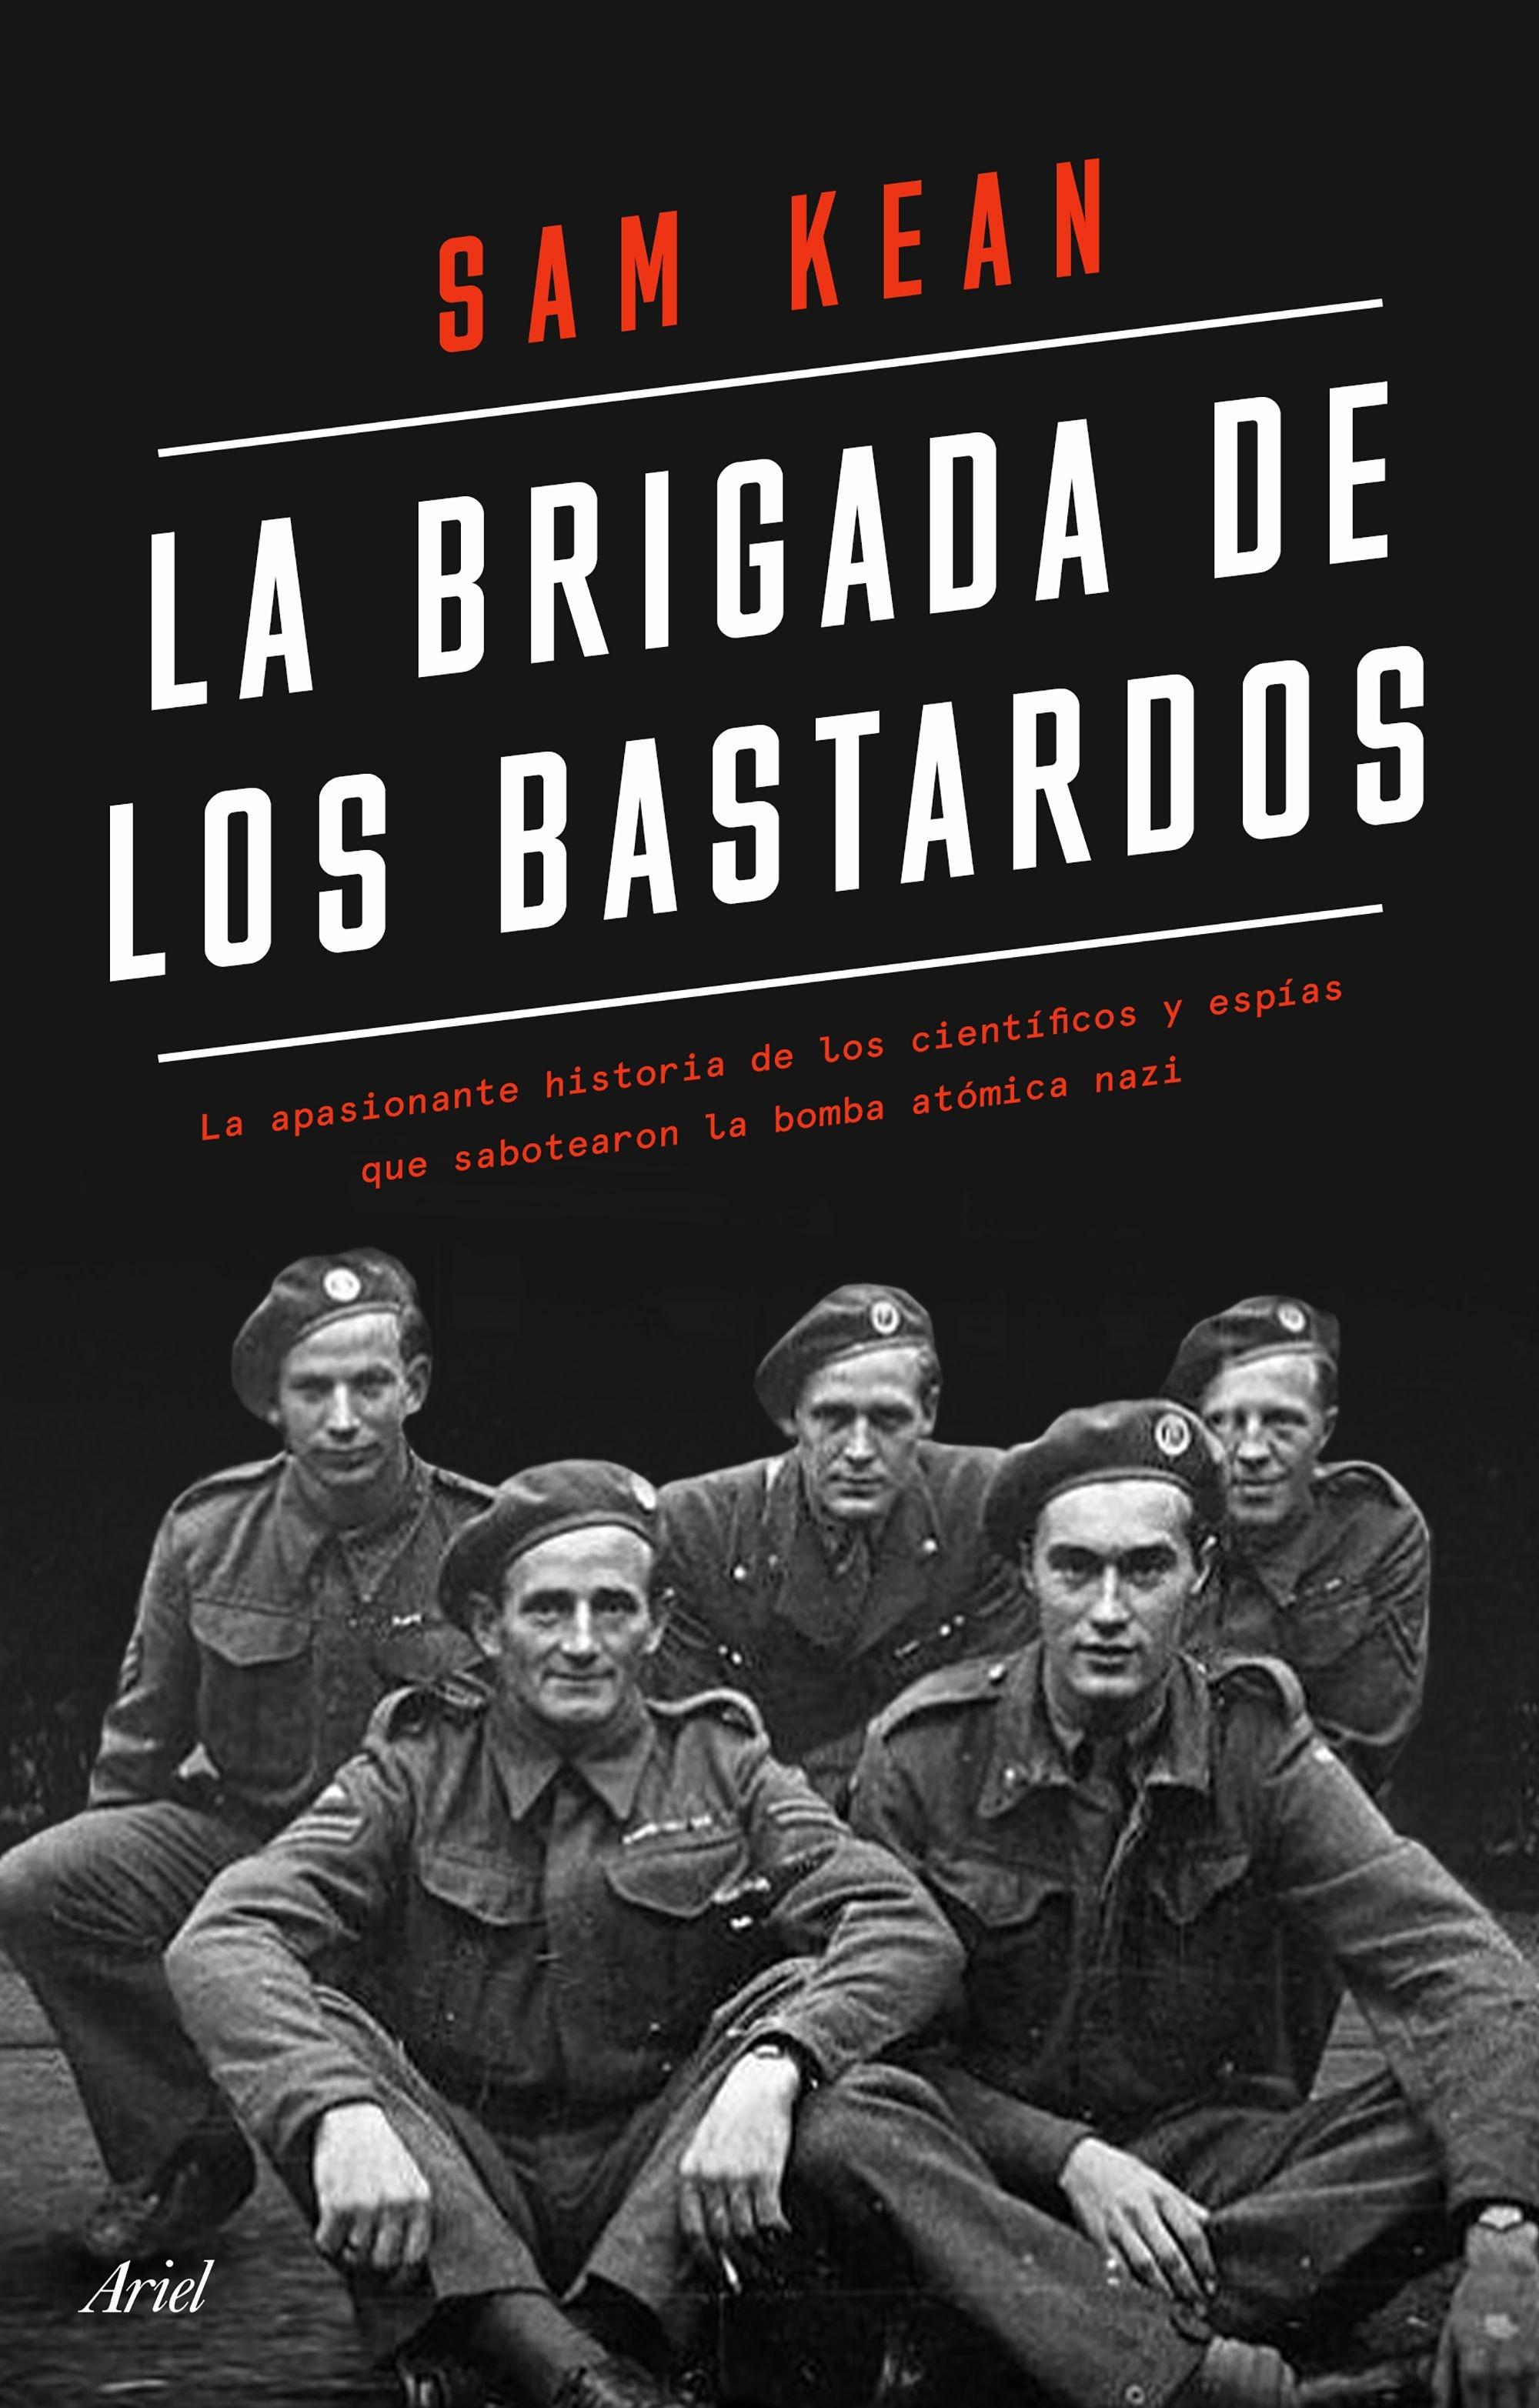 Brigada de los bastardos, La "La apasionante historia de los científicos y espías que sabotearon la bo"